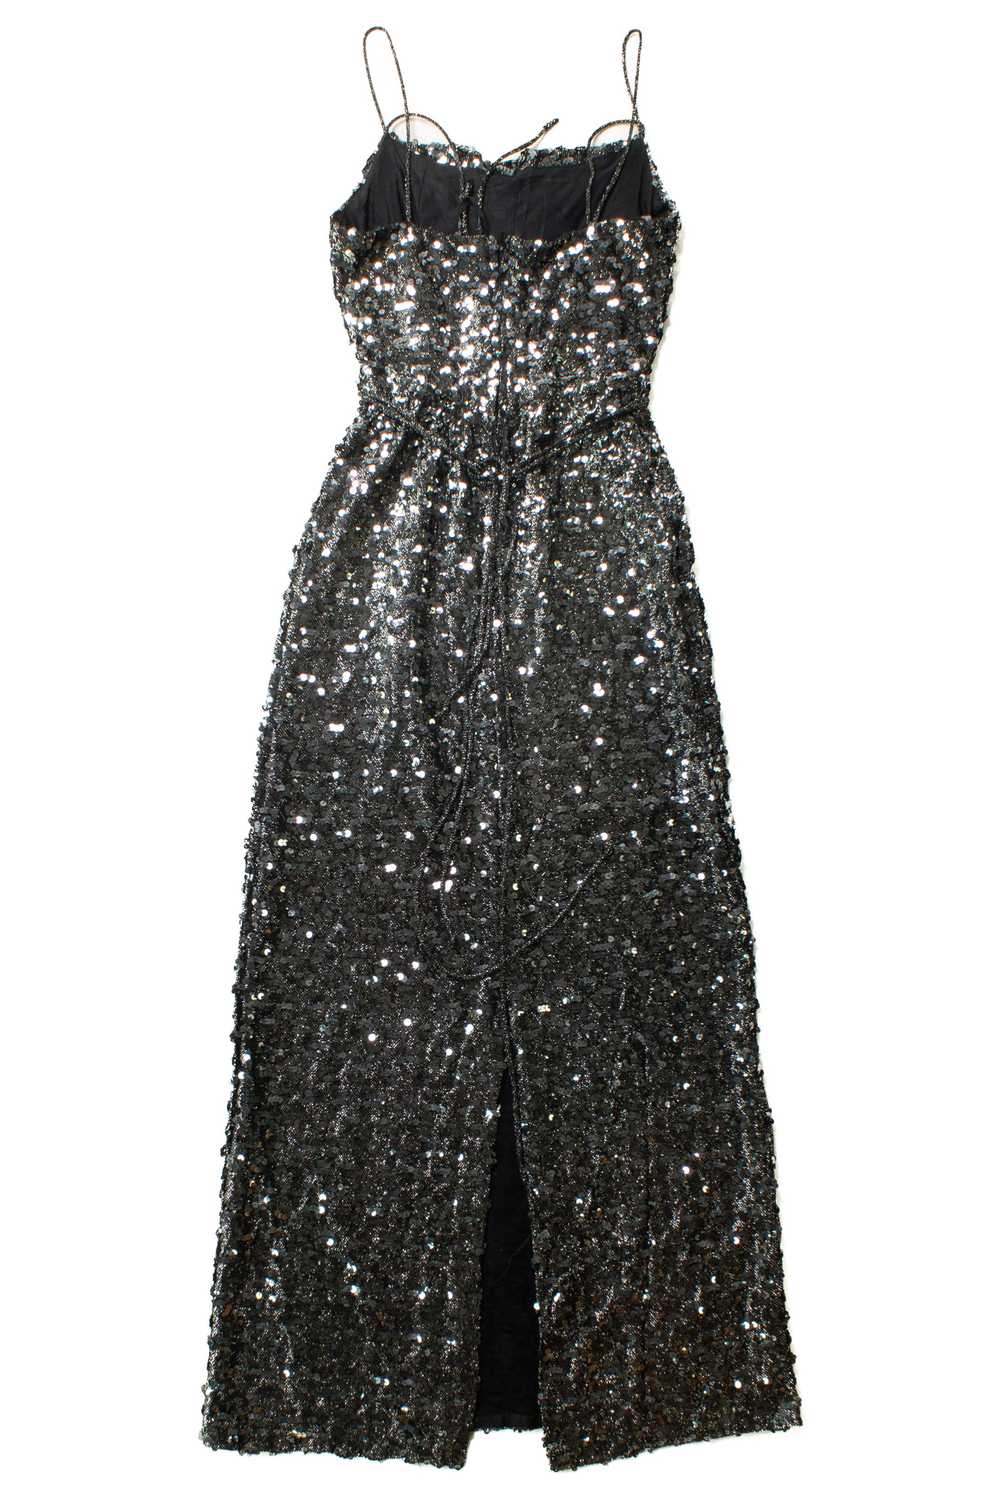 Vintage Norman Berg Black Sequin Dress - image 6